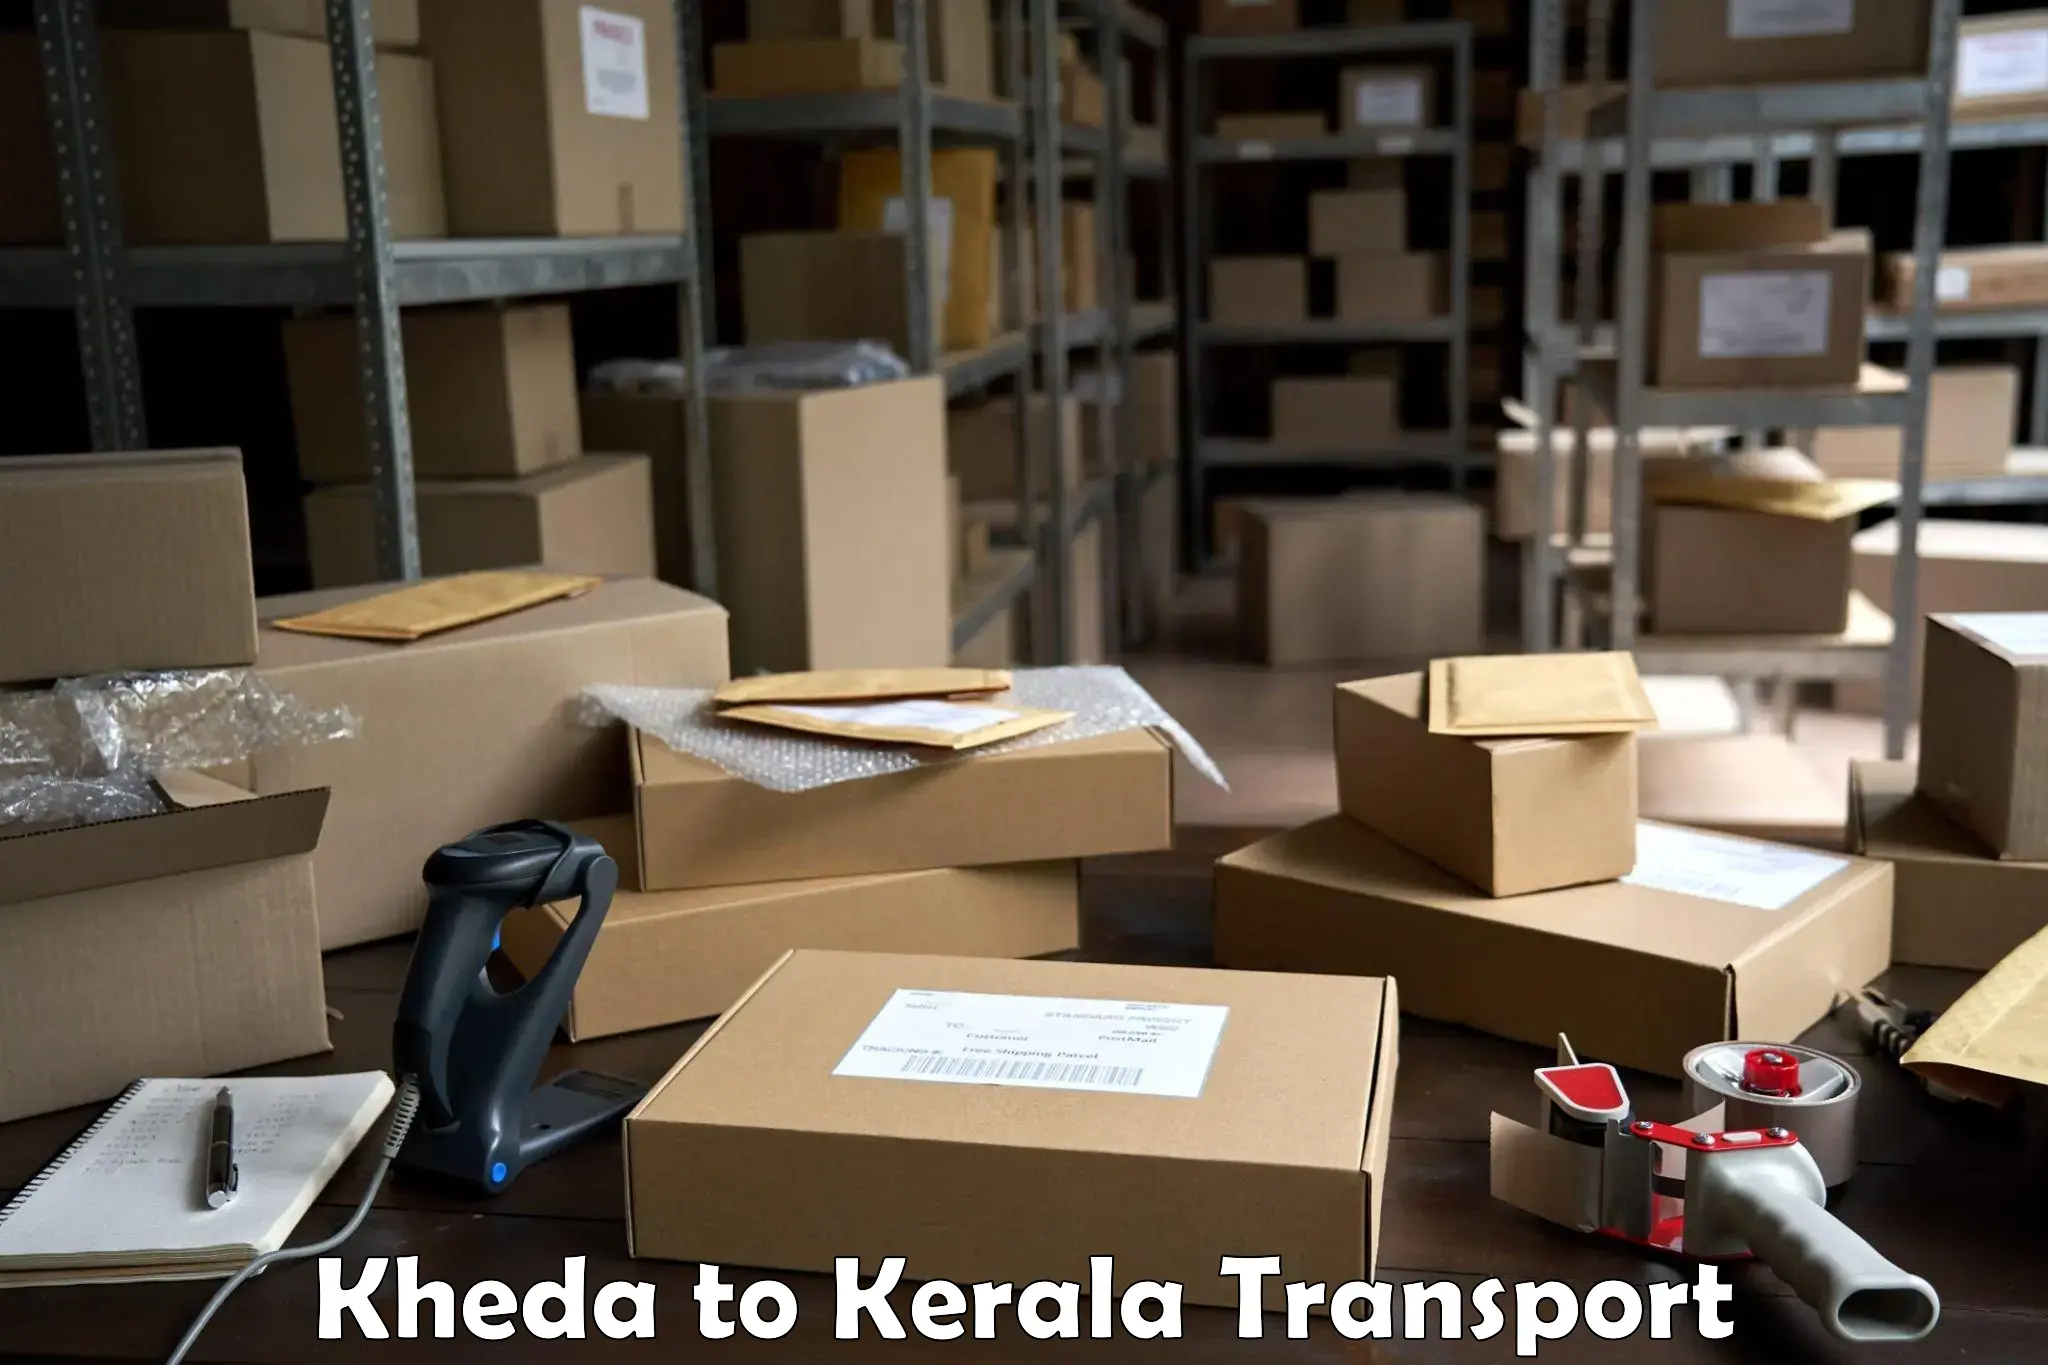 Delivery service Kheda to Koothattukulam